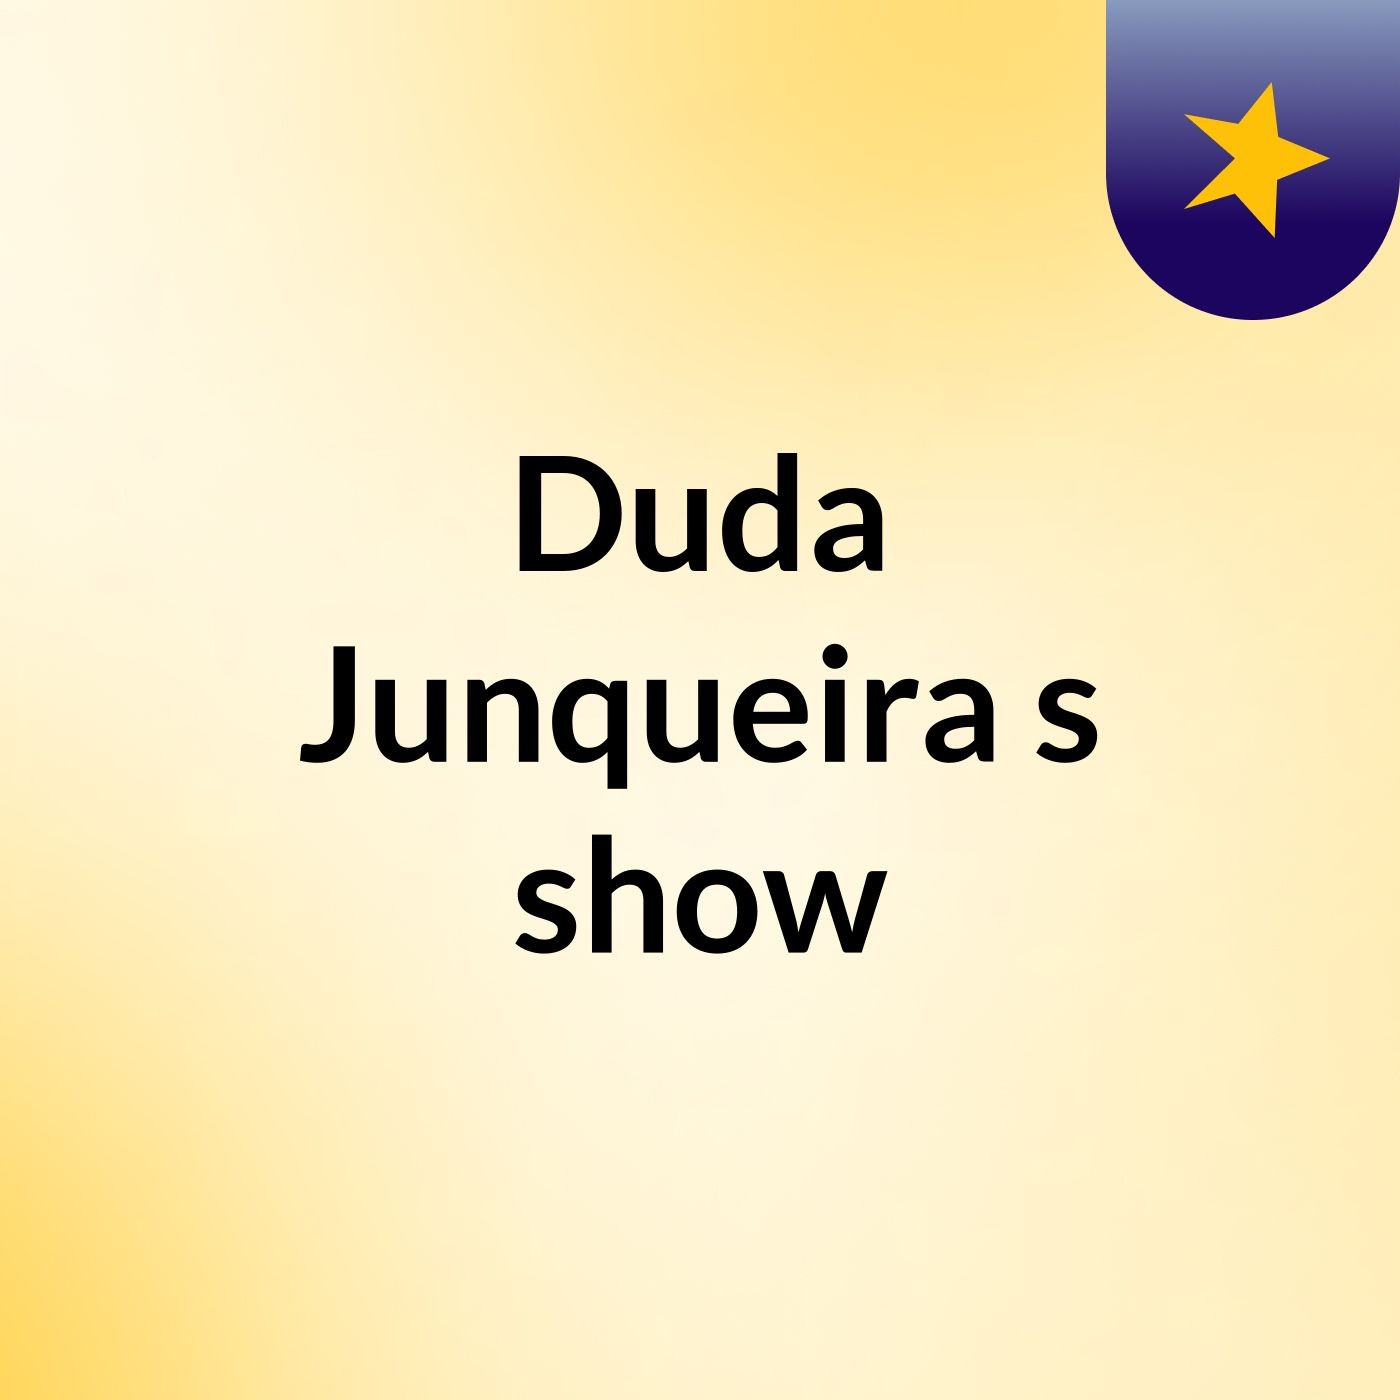 Duda Junqueira's show